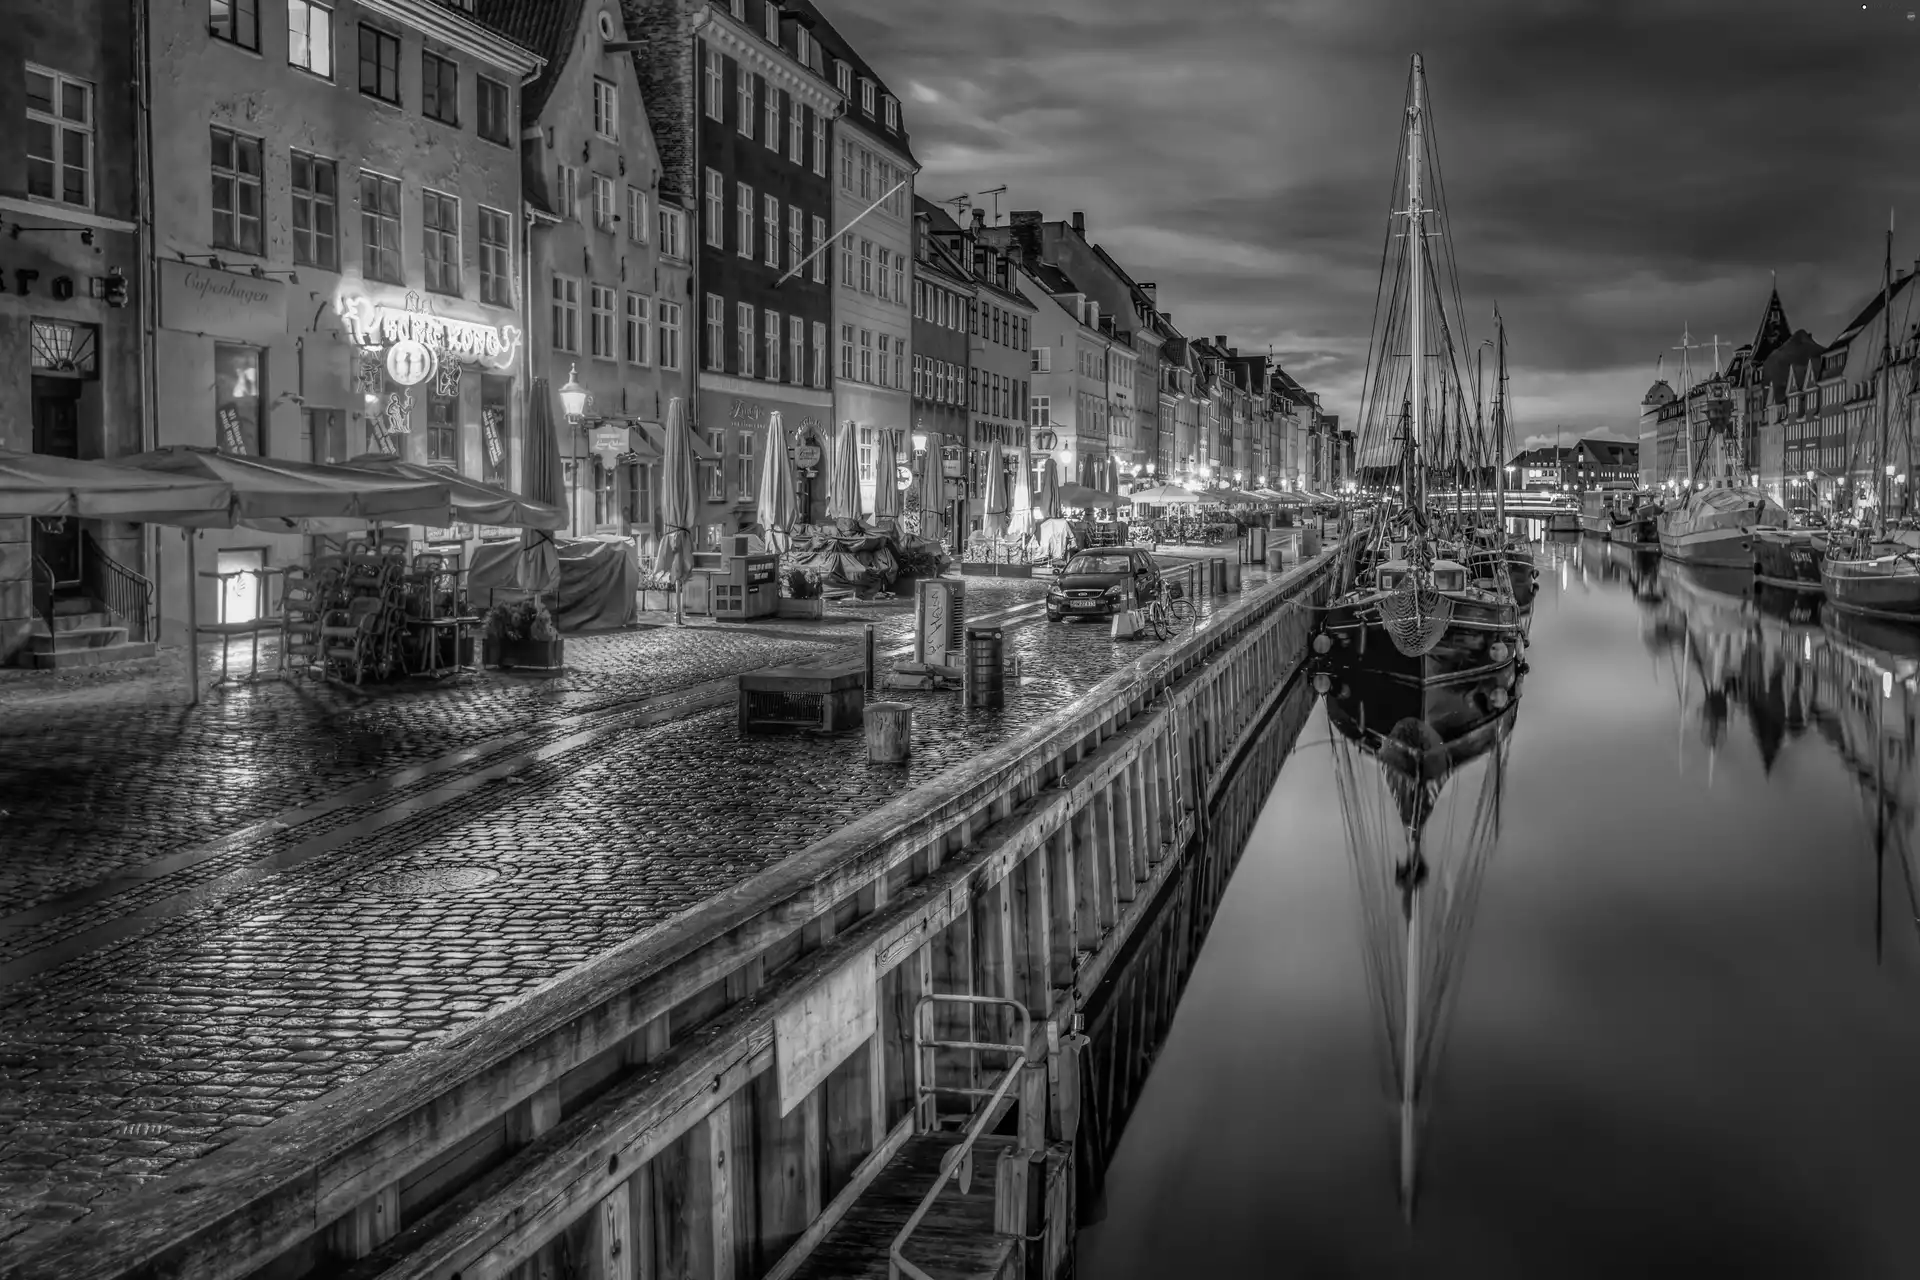 Ship, City at Night, Denmark, River, Houses, Copenhagen, port